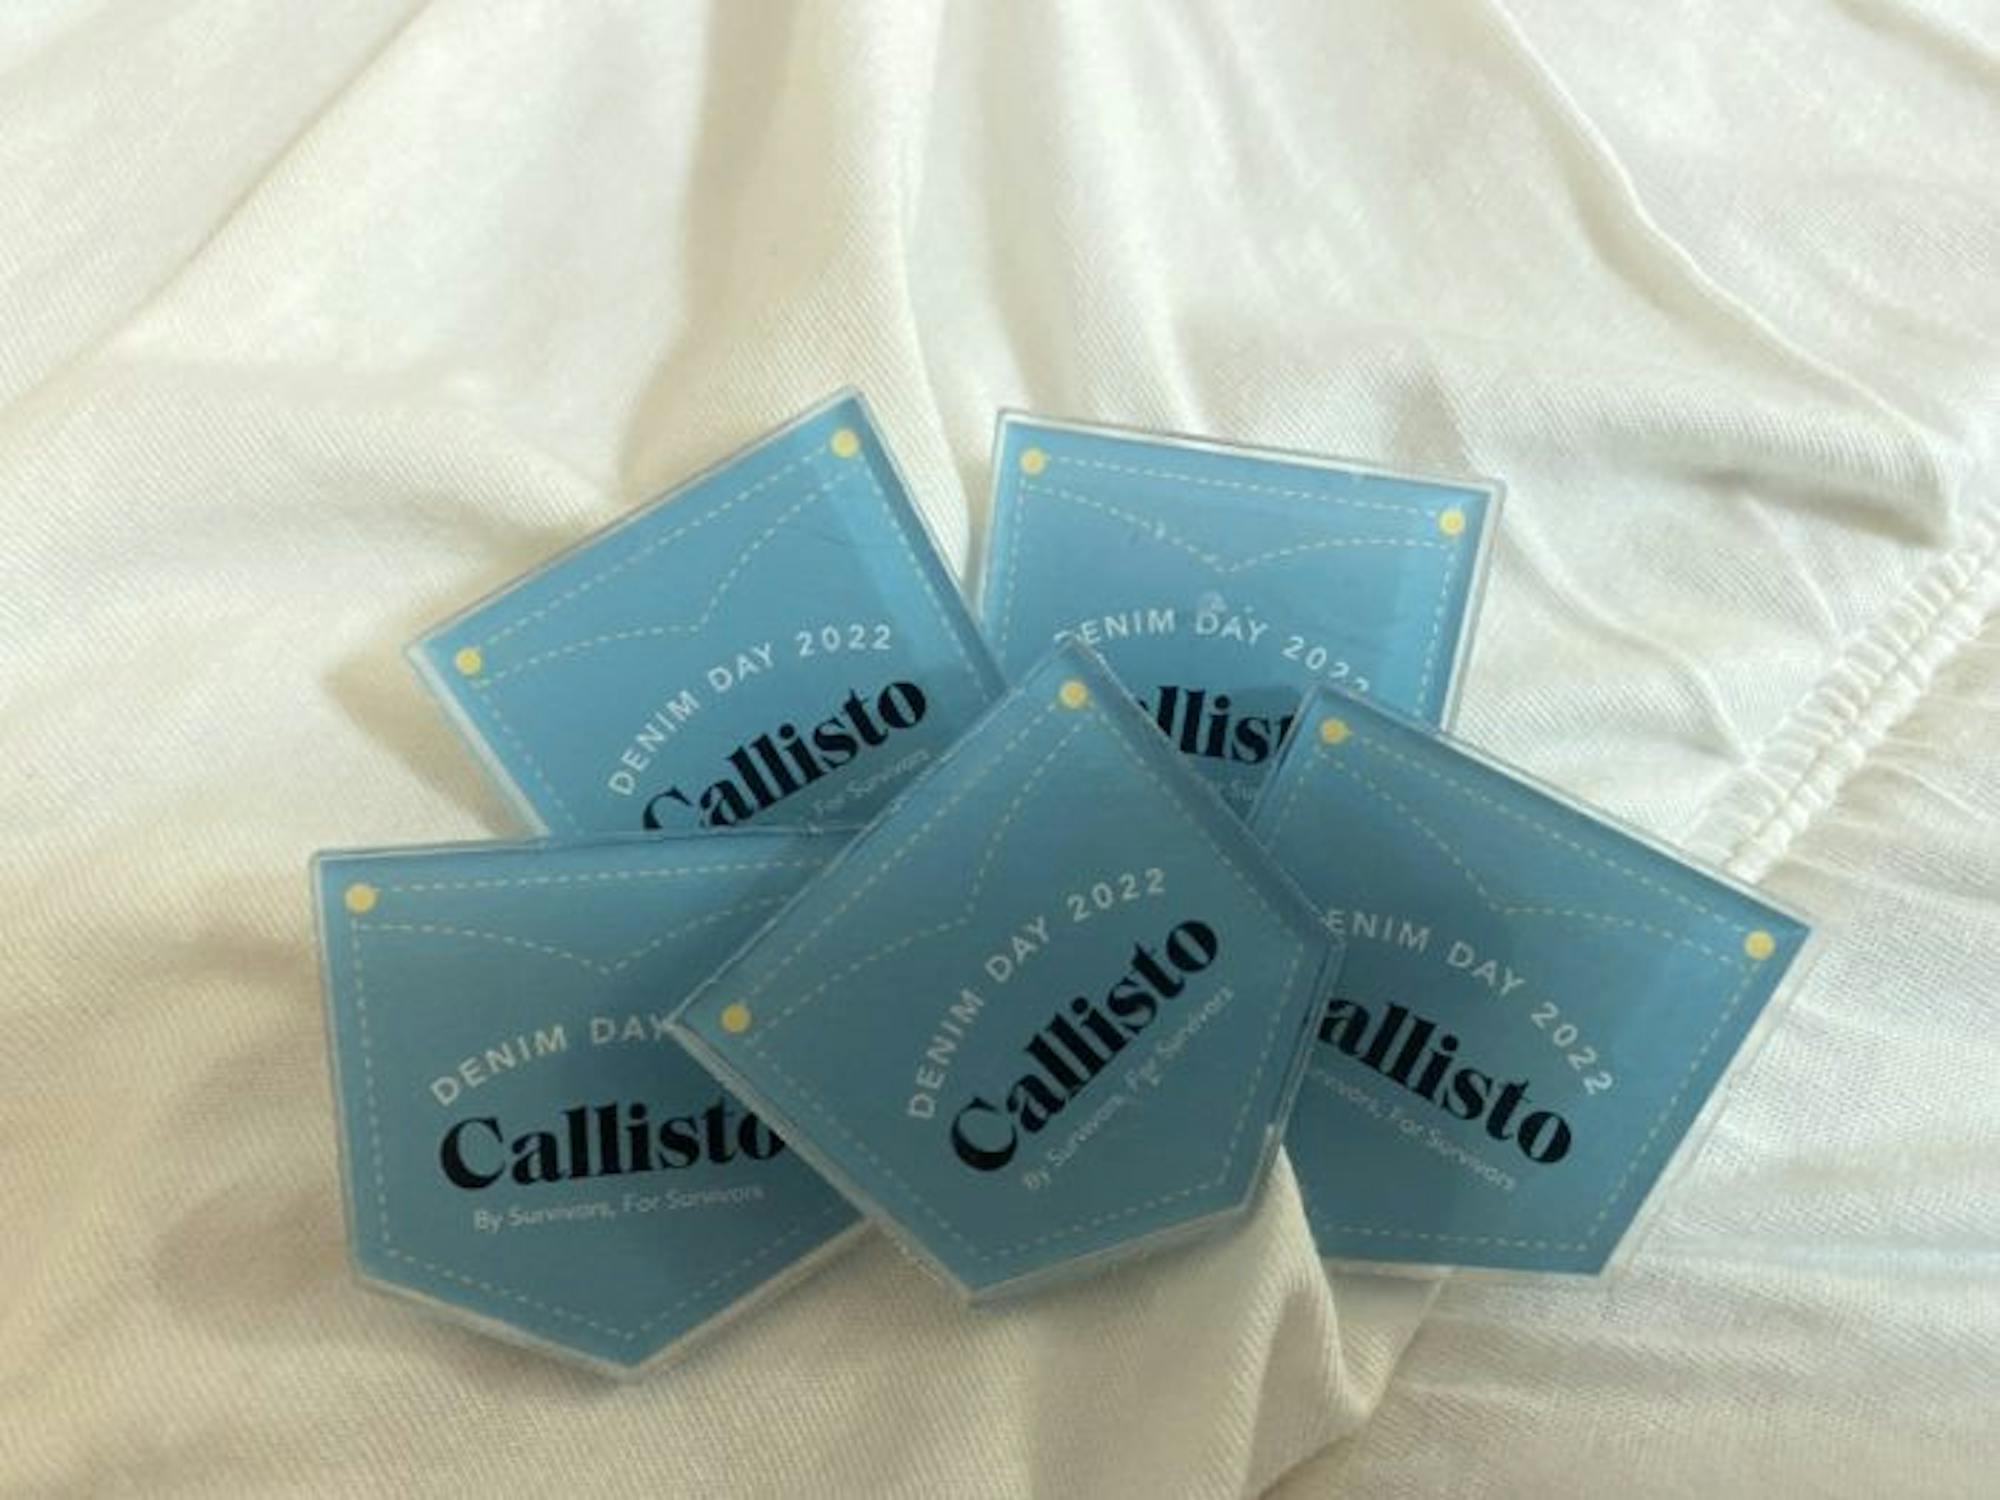 Callisto Denim Day pins